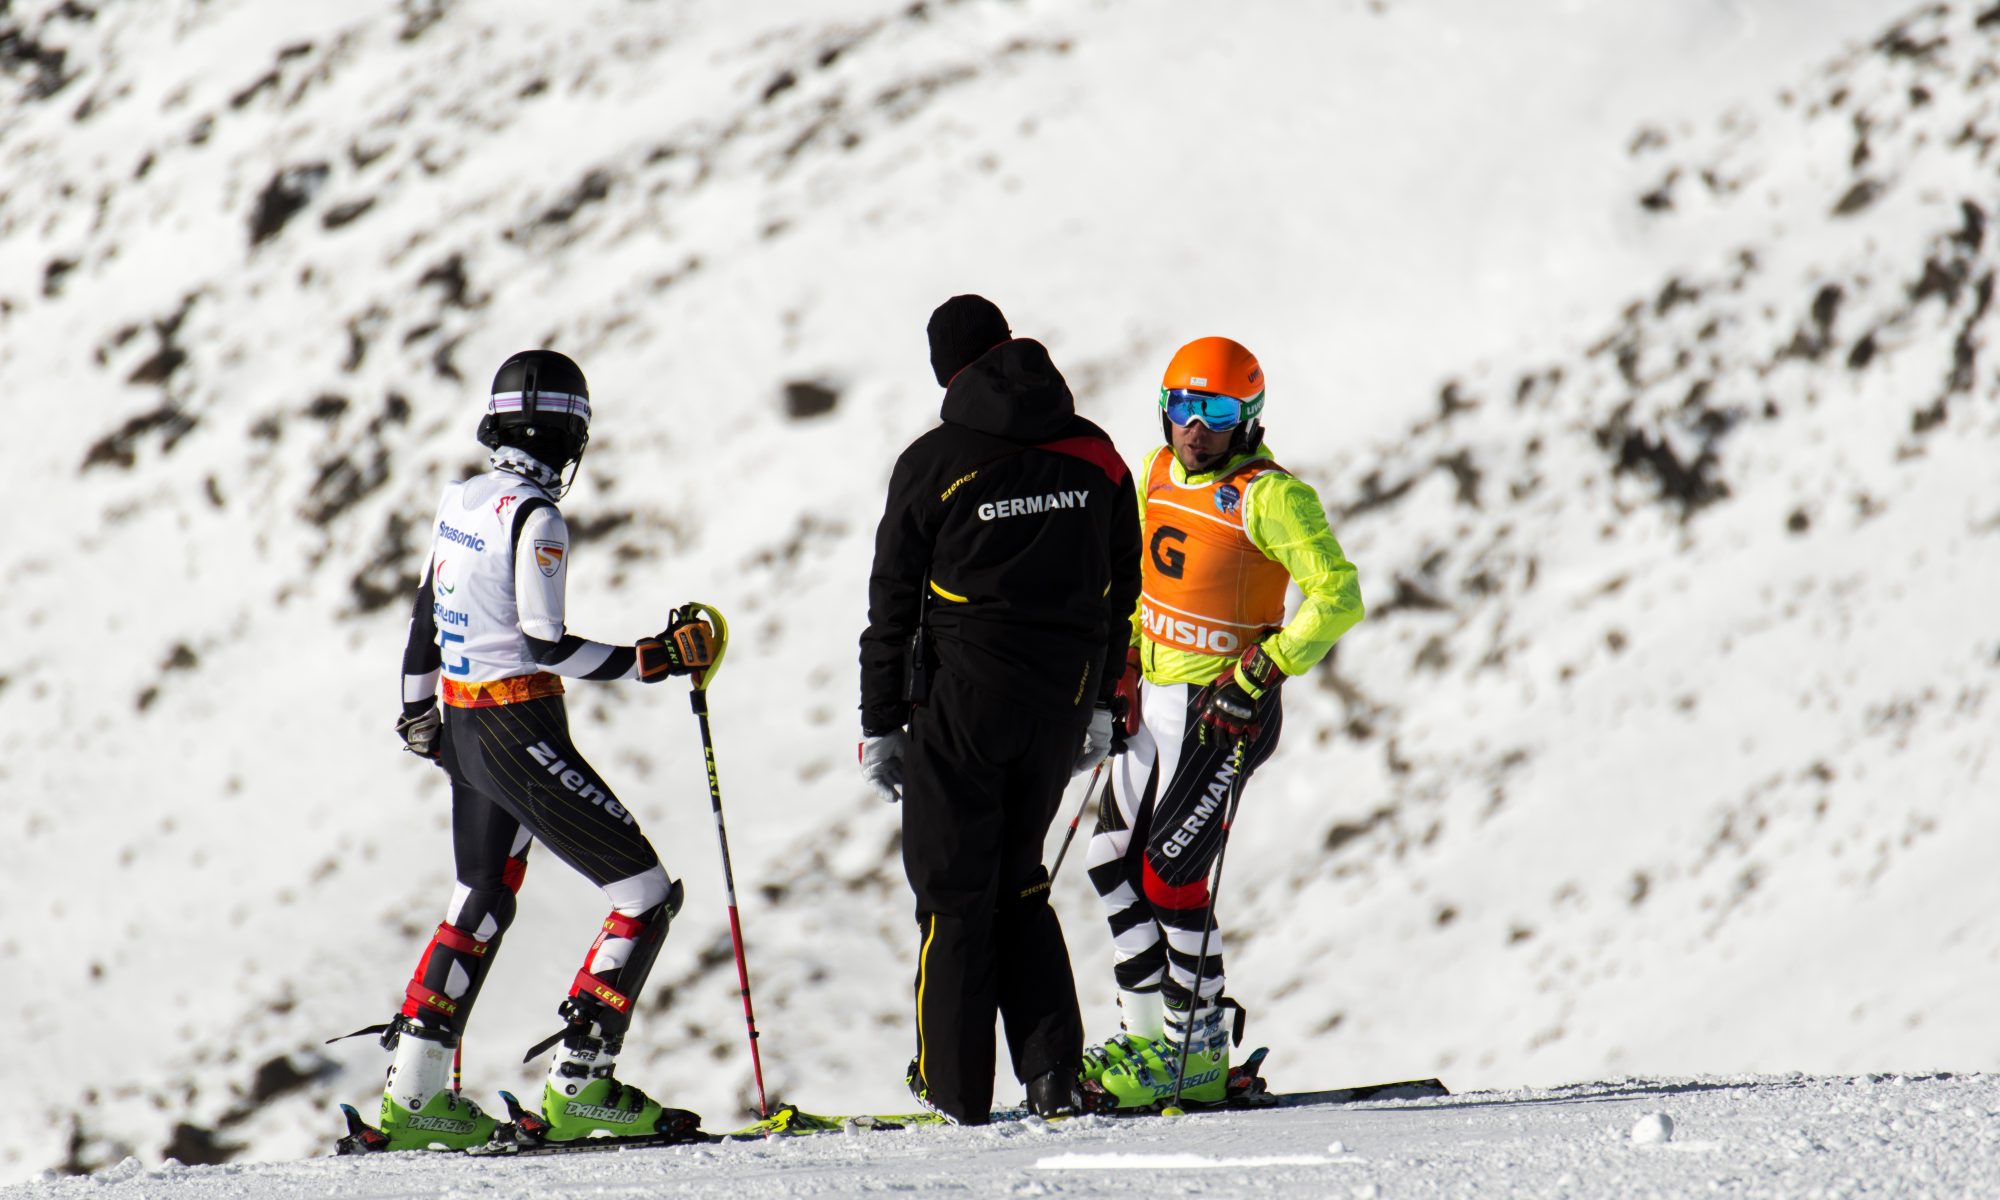 Auf dem Bild sind die Skifahrer Noemi und Lucien mit Ihrem Trainer zu sehen. SIe betrachten den Hang und besprechen sich.